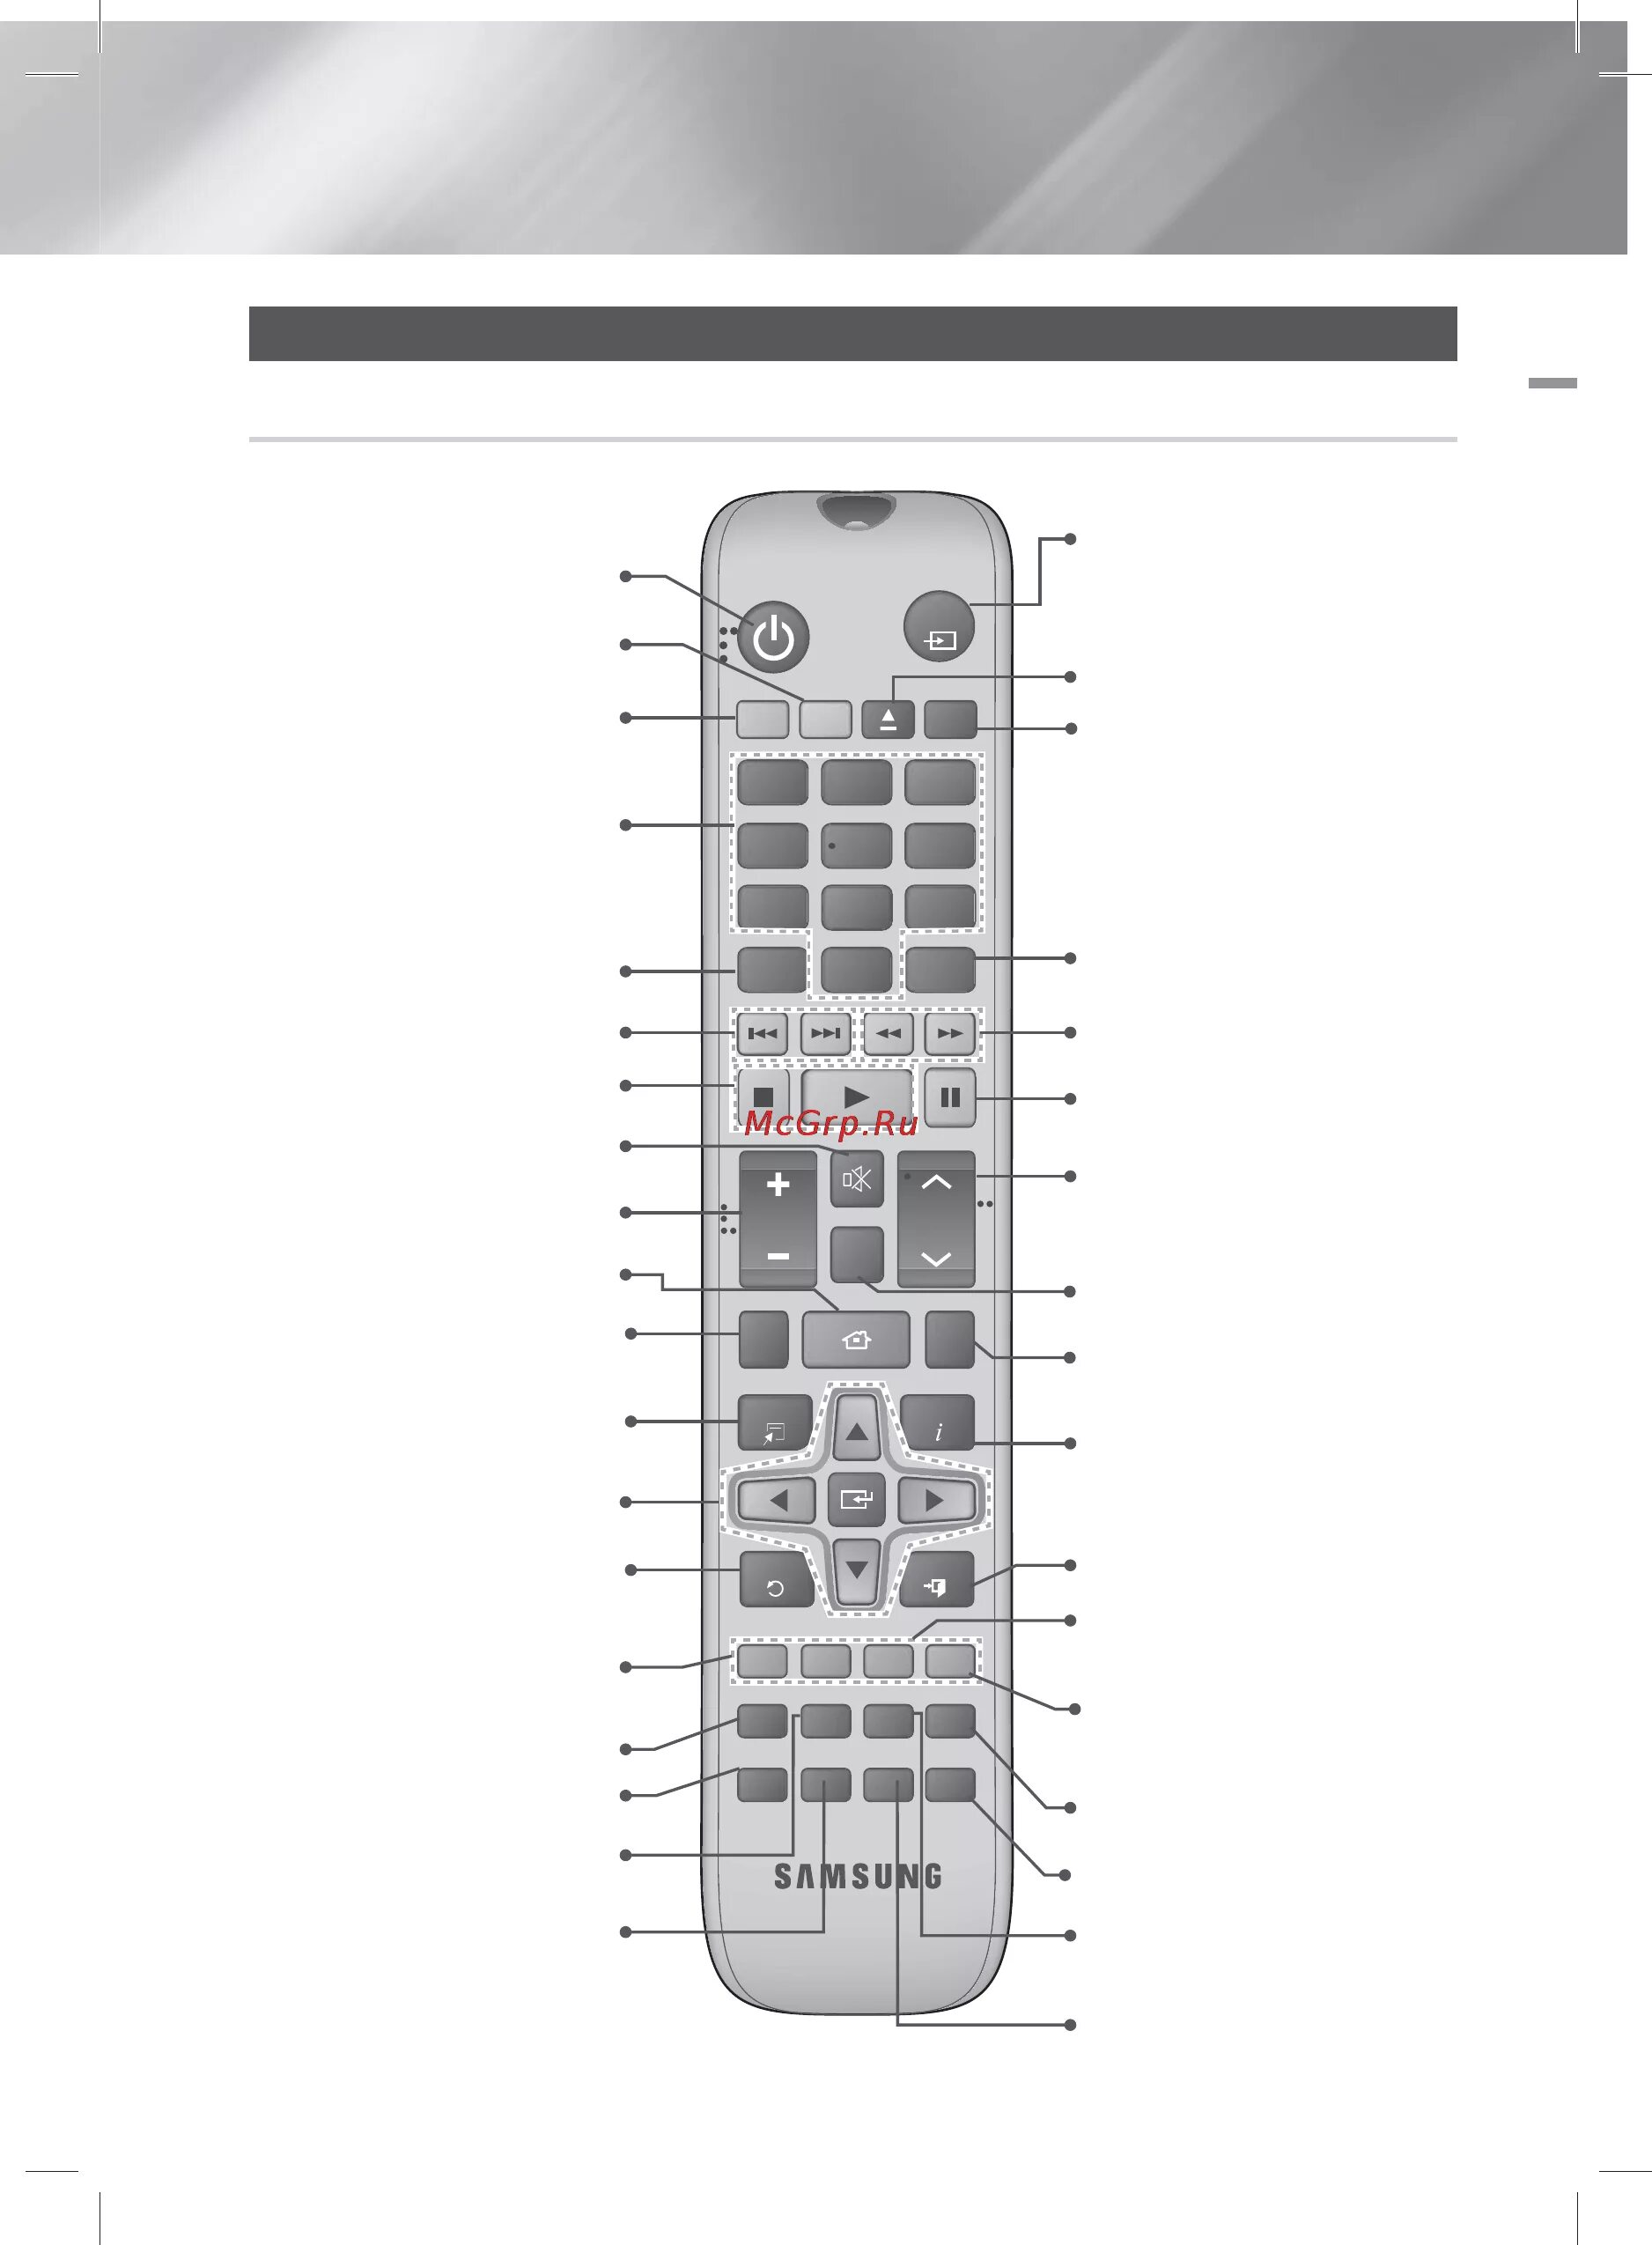 Кнопки на телевизоре обозначения. Назначение кнопок на пульте телевизора самсунг. Пульт для кинотеатра самсунг f5500k. DVD e360k Samsung пульт. Пульт для самсунга телевизора описание кнопок самсунг.